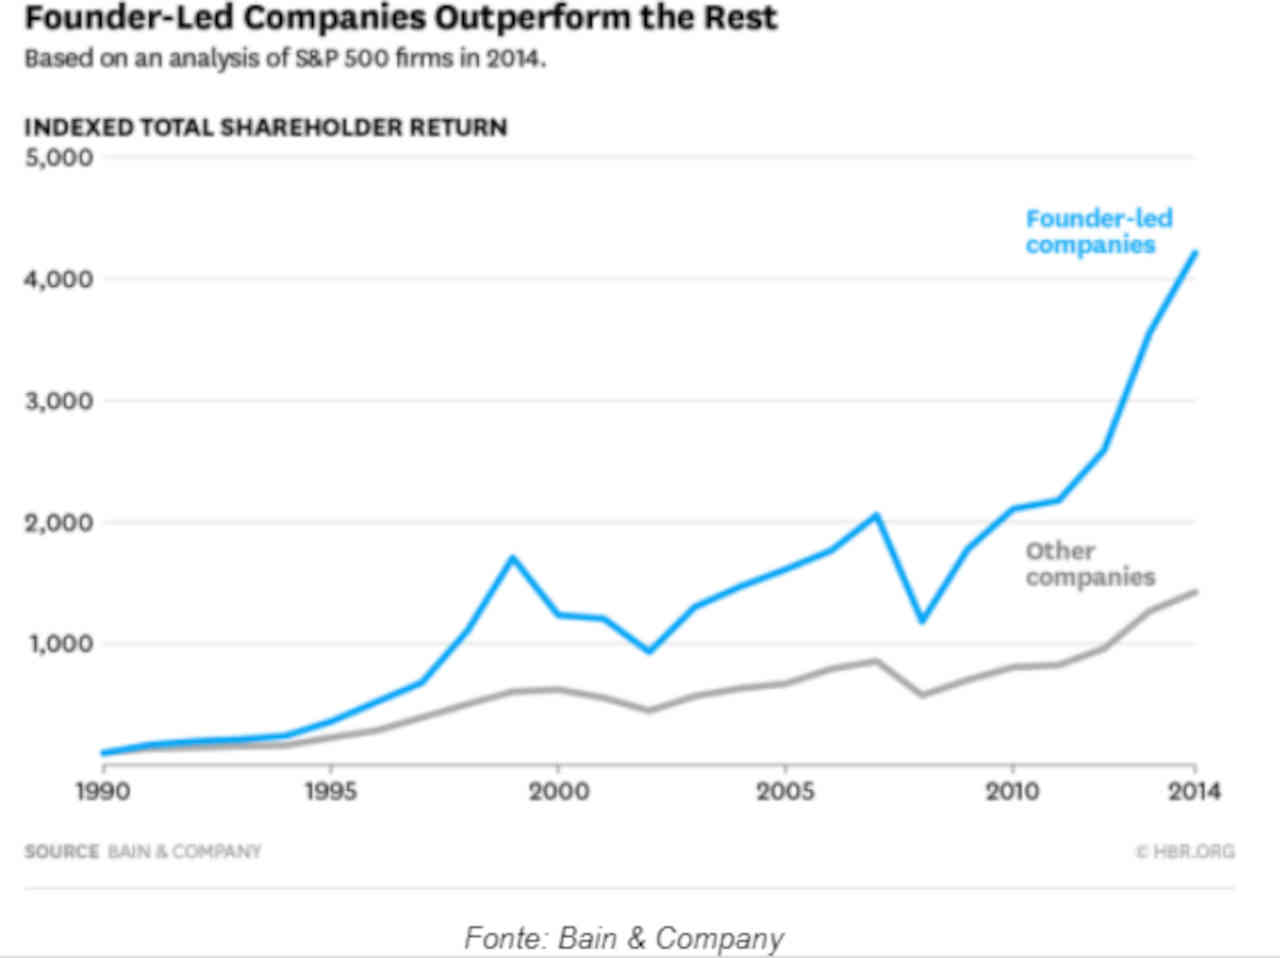 Gráfico mostra retorno das ações de empresas ainda controladas por donos ou famílias fundadoras